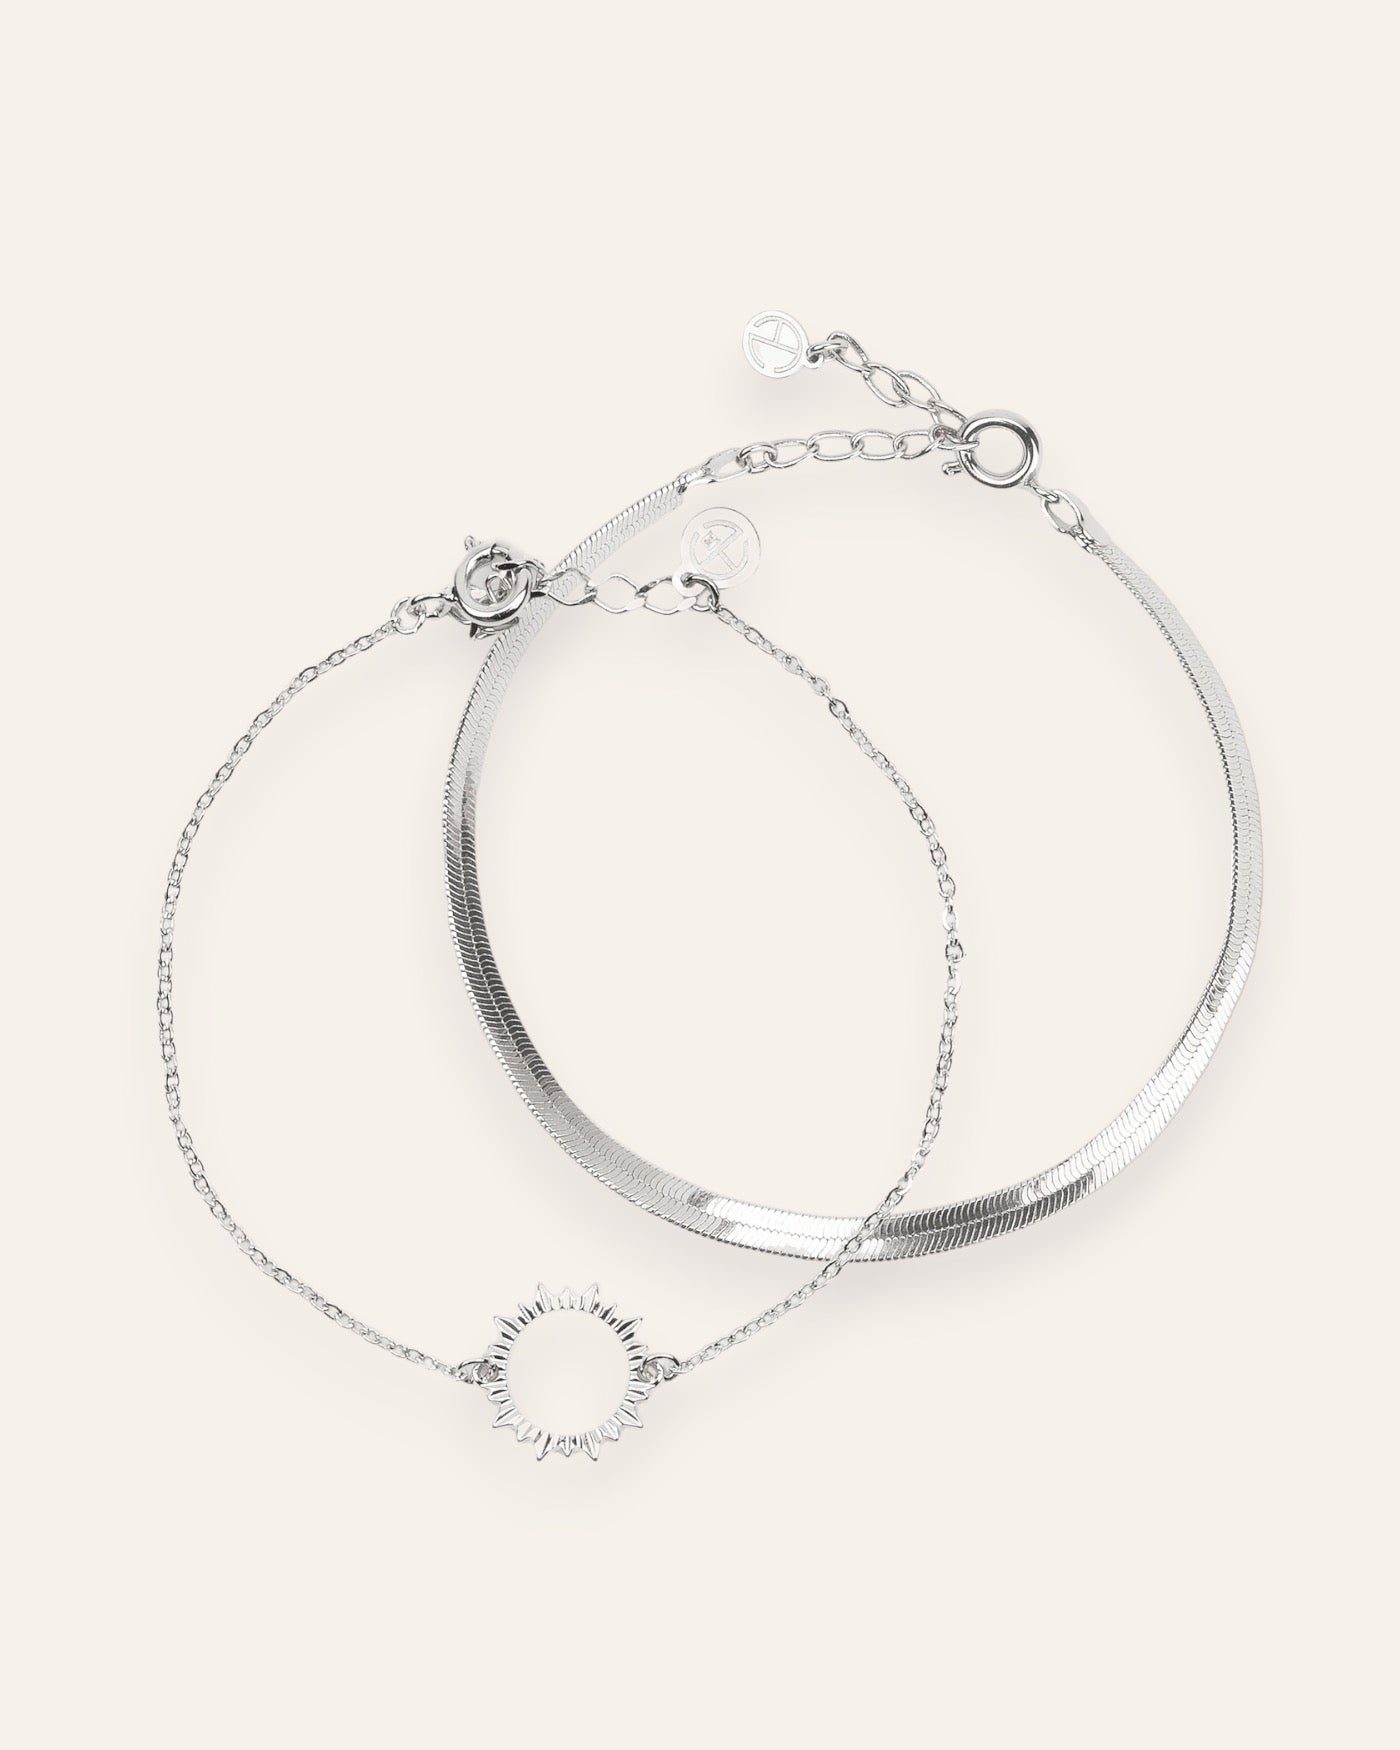 Composition de deux bracelets, avec un bracelet en chaîne plate en argent 100% recyclé, et un bracelet en chaîne fine habillée d'un soleil ajouré en argent massif 925.